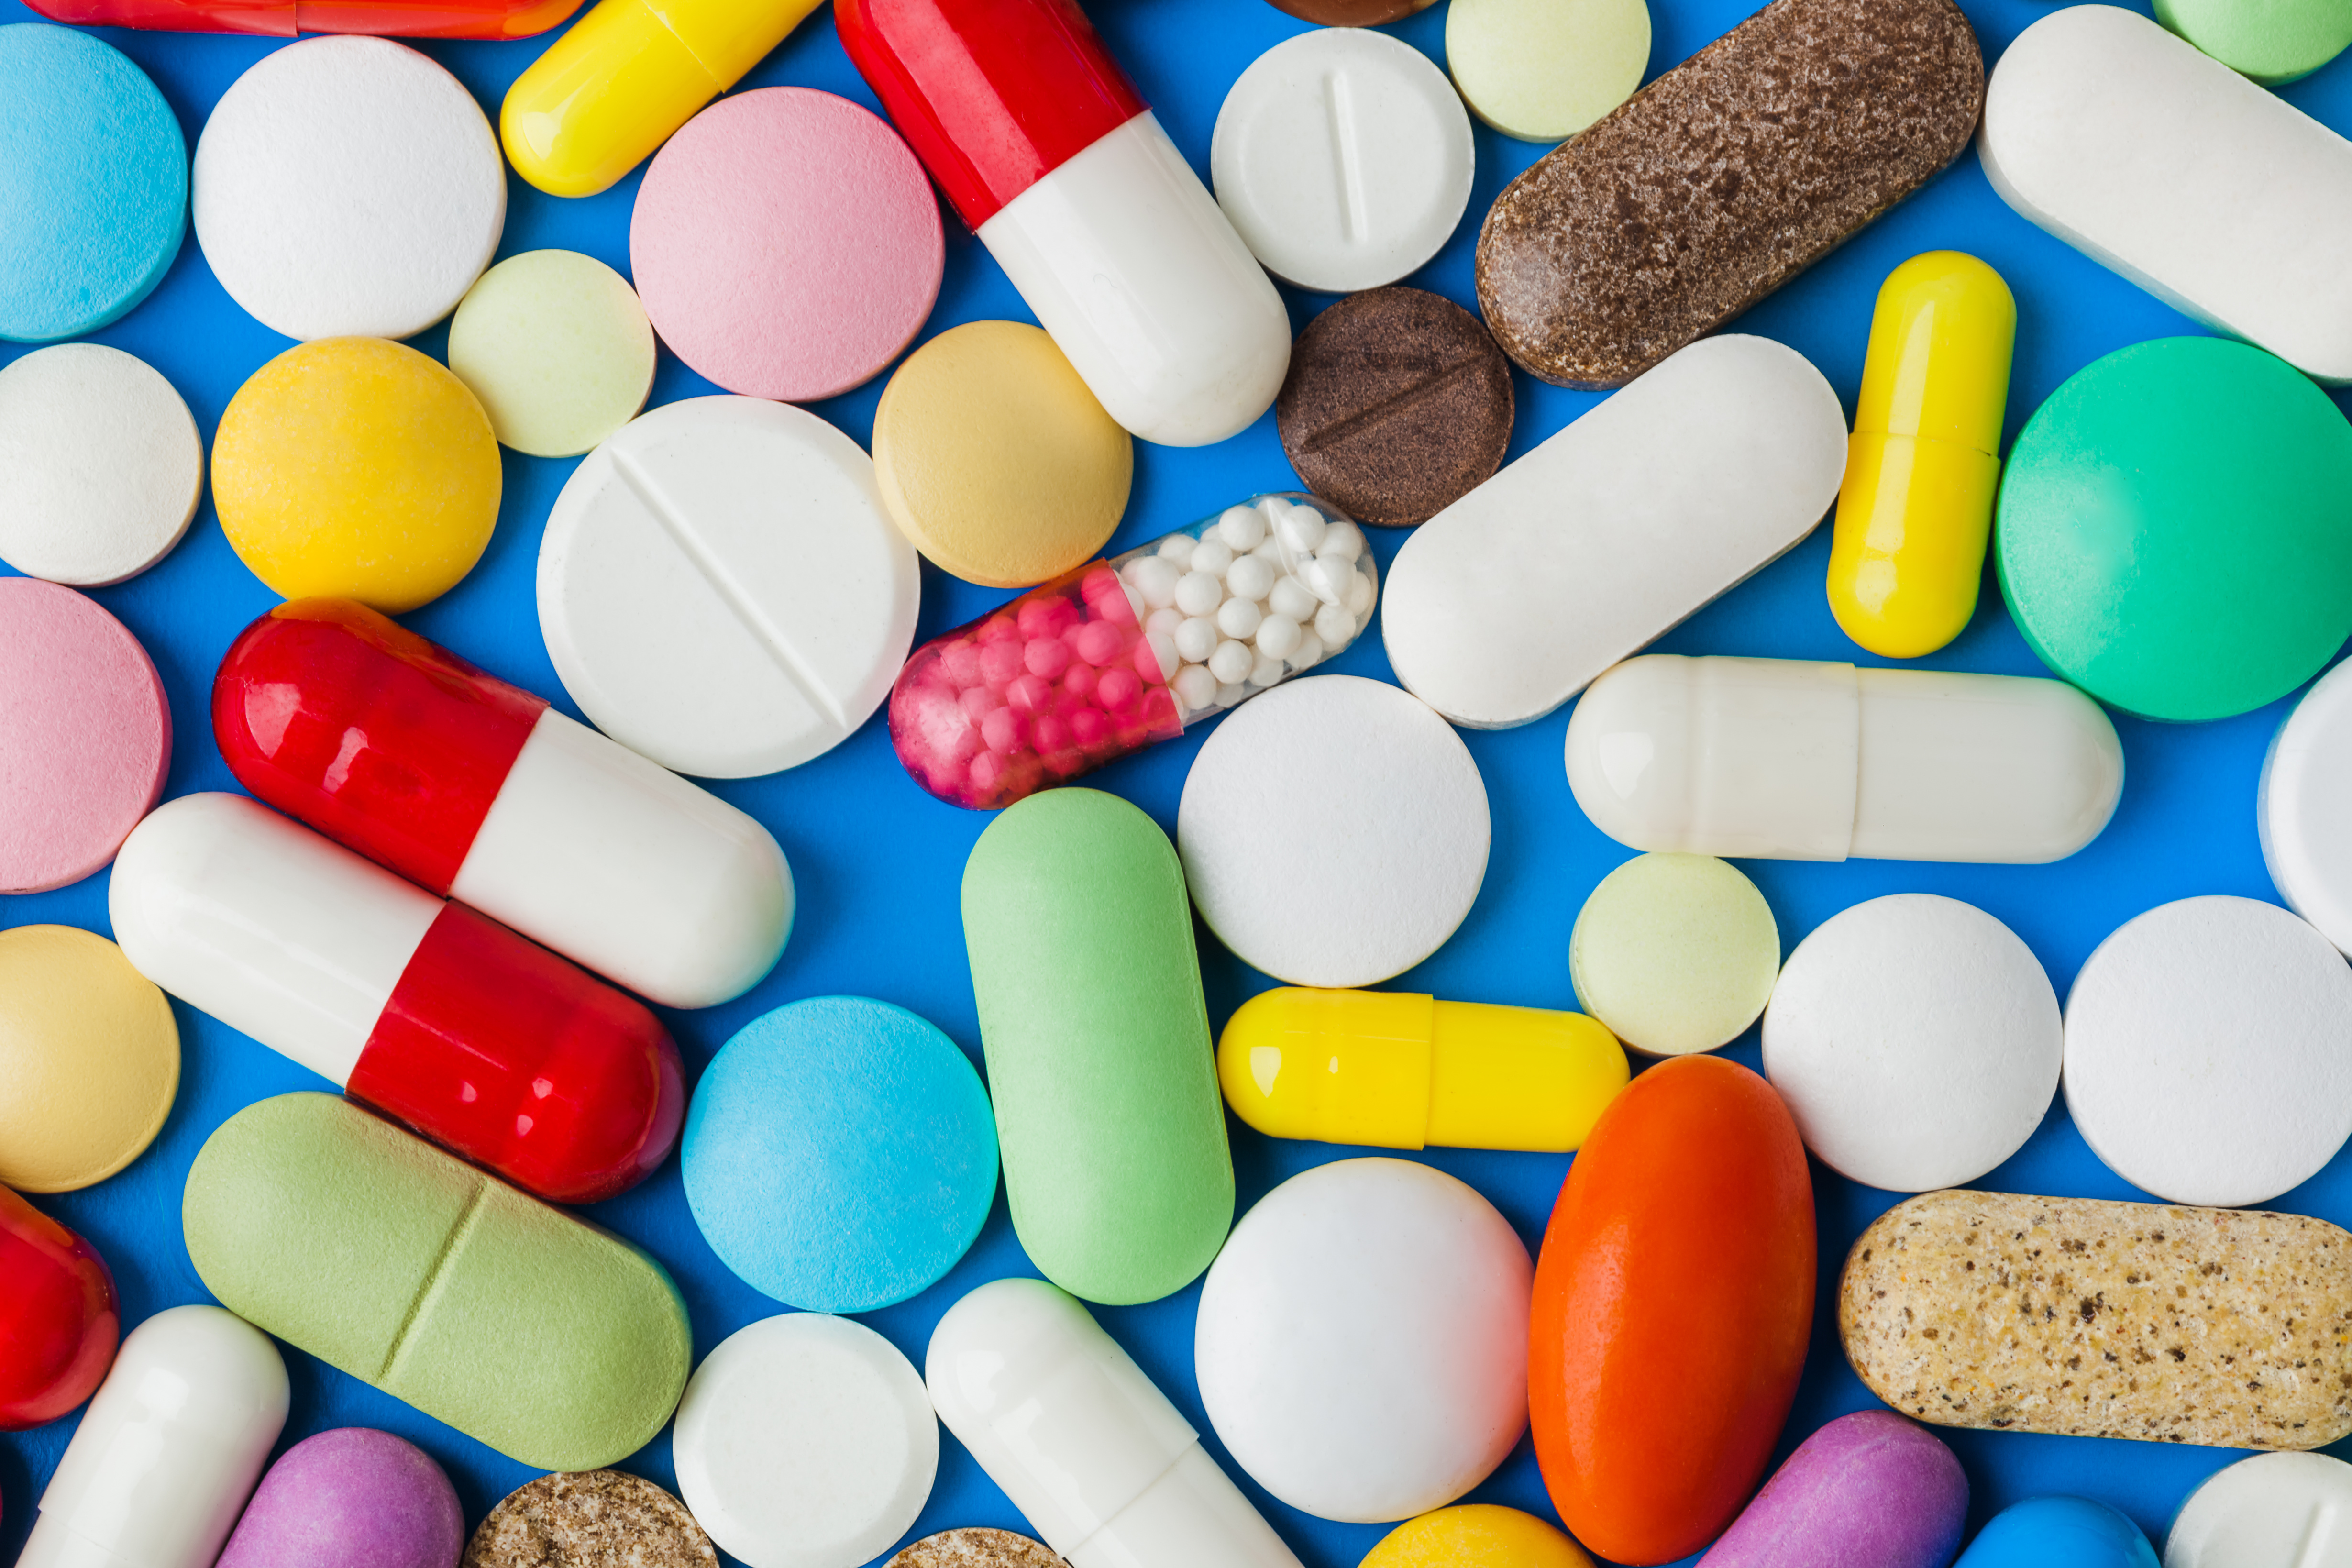 Cent-douze médicaments autorisés ont une balance bénéfice-risque insatisfaisante, selon la revue Prescrire. © Nikolai Sorokin, Adobe Stock